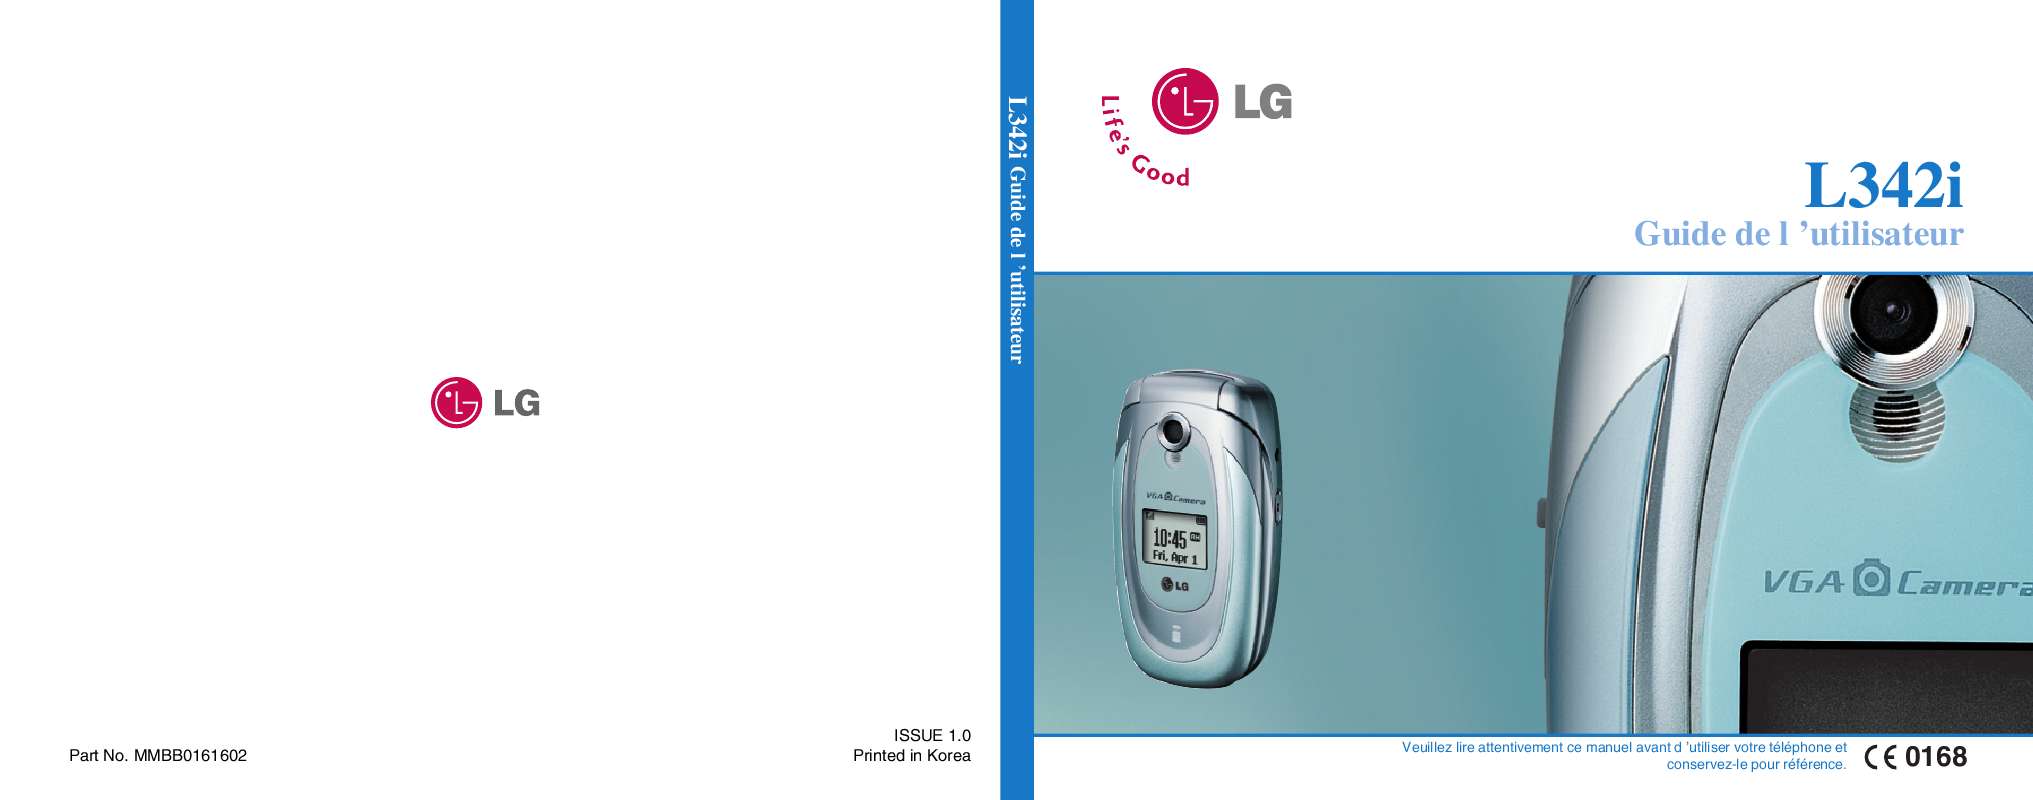 Guide utilisation LG L342I  de la marque LG